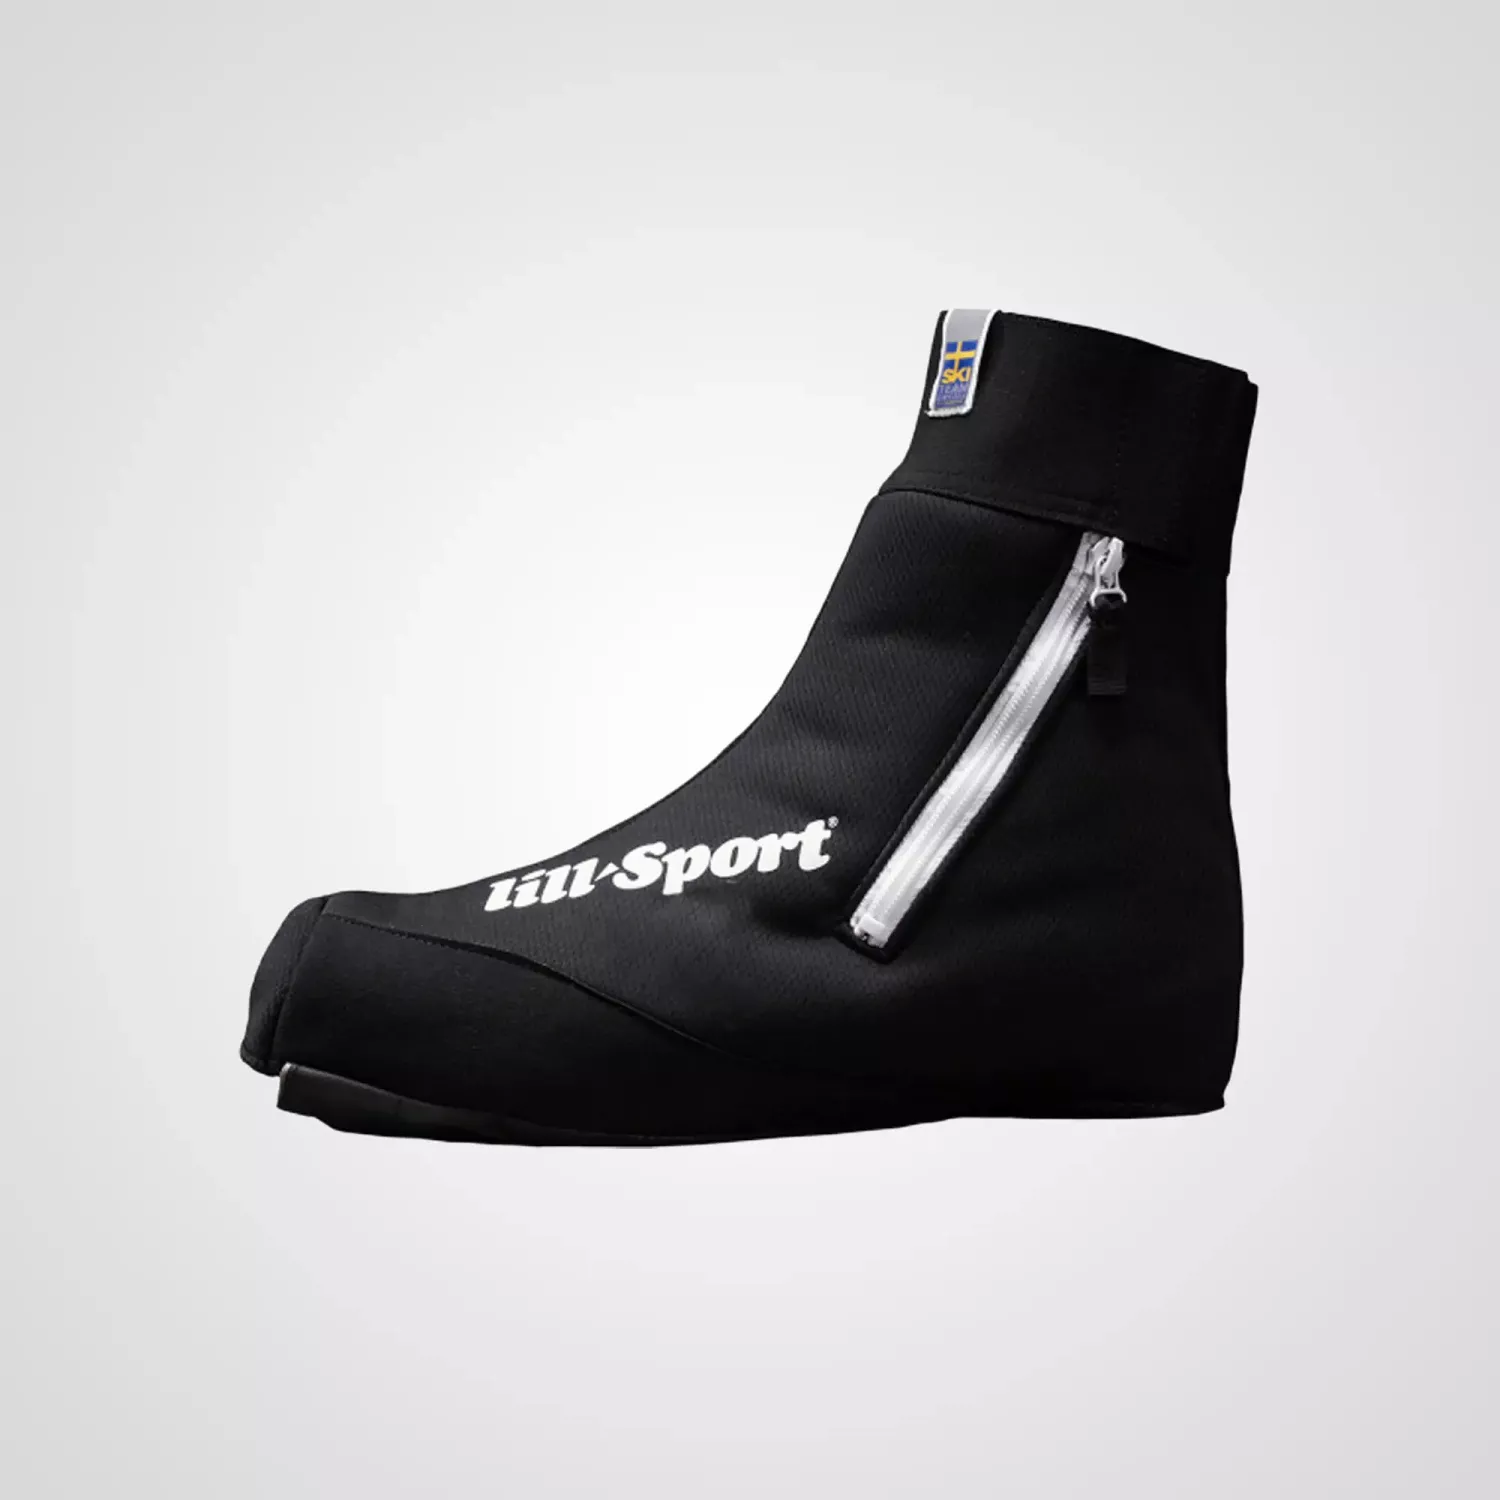 Lill Sport Boot Cover Black